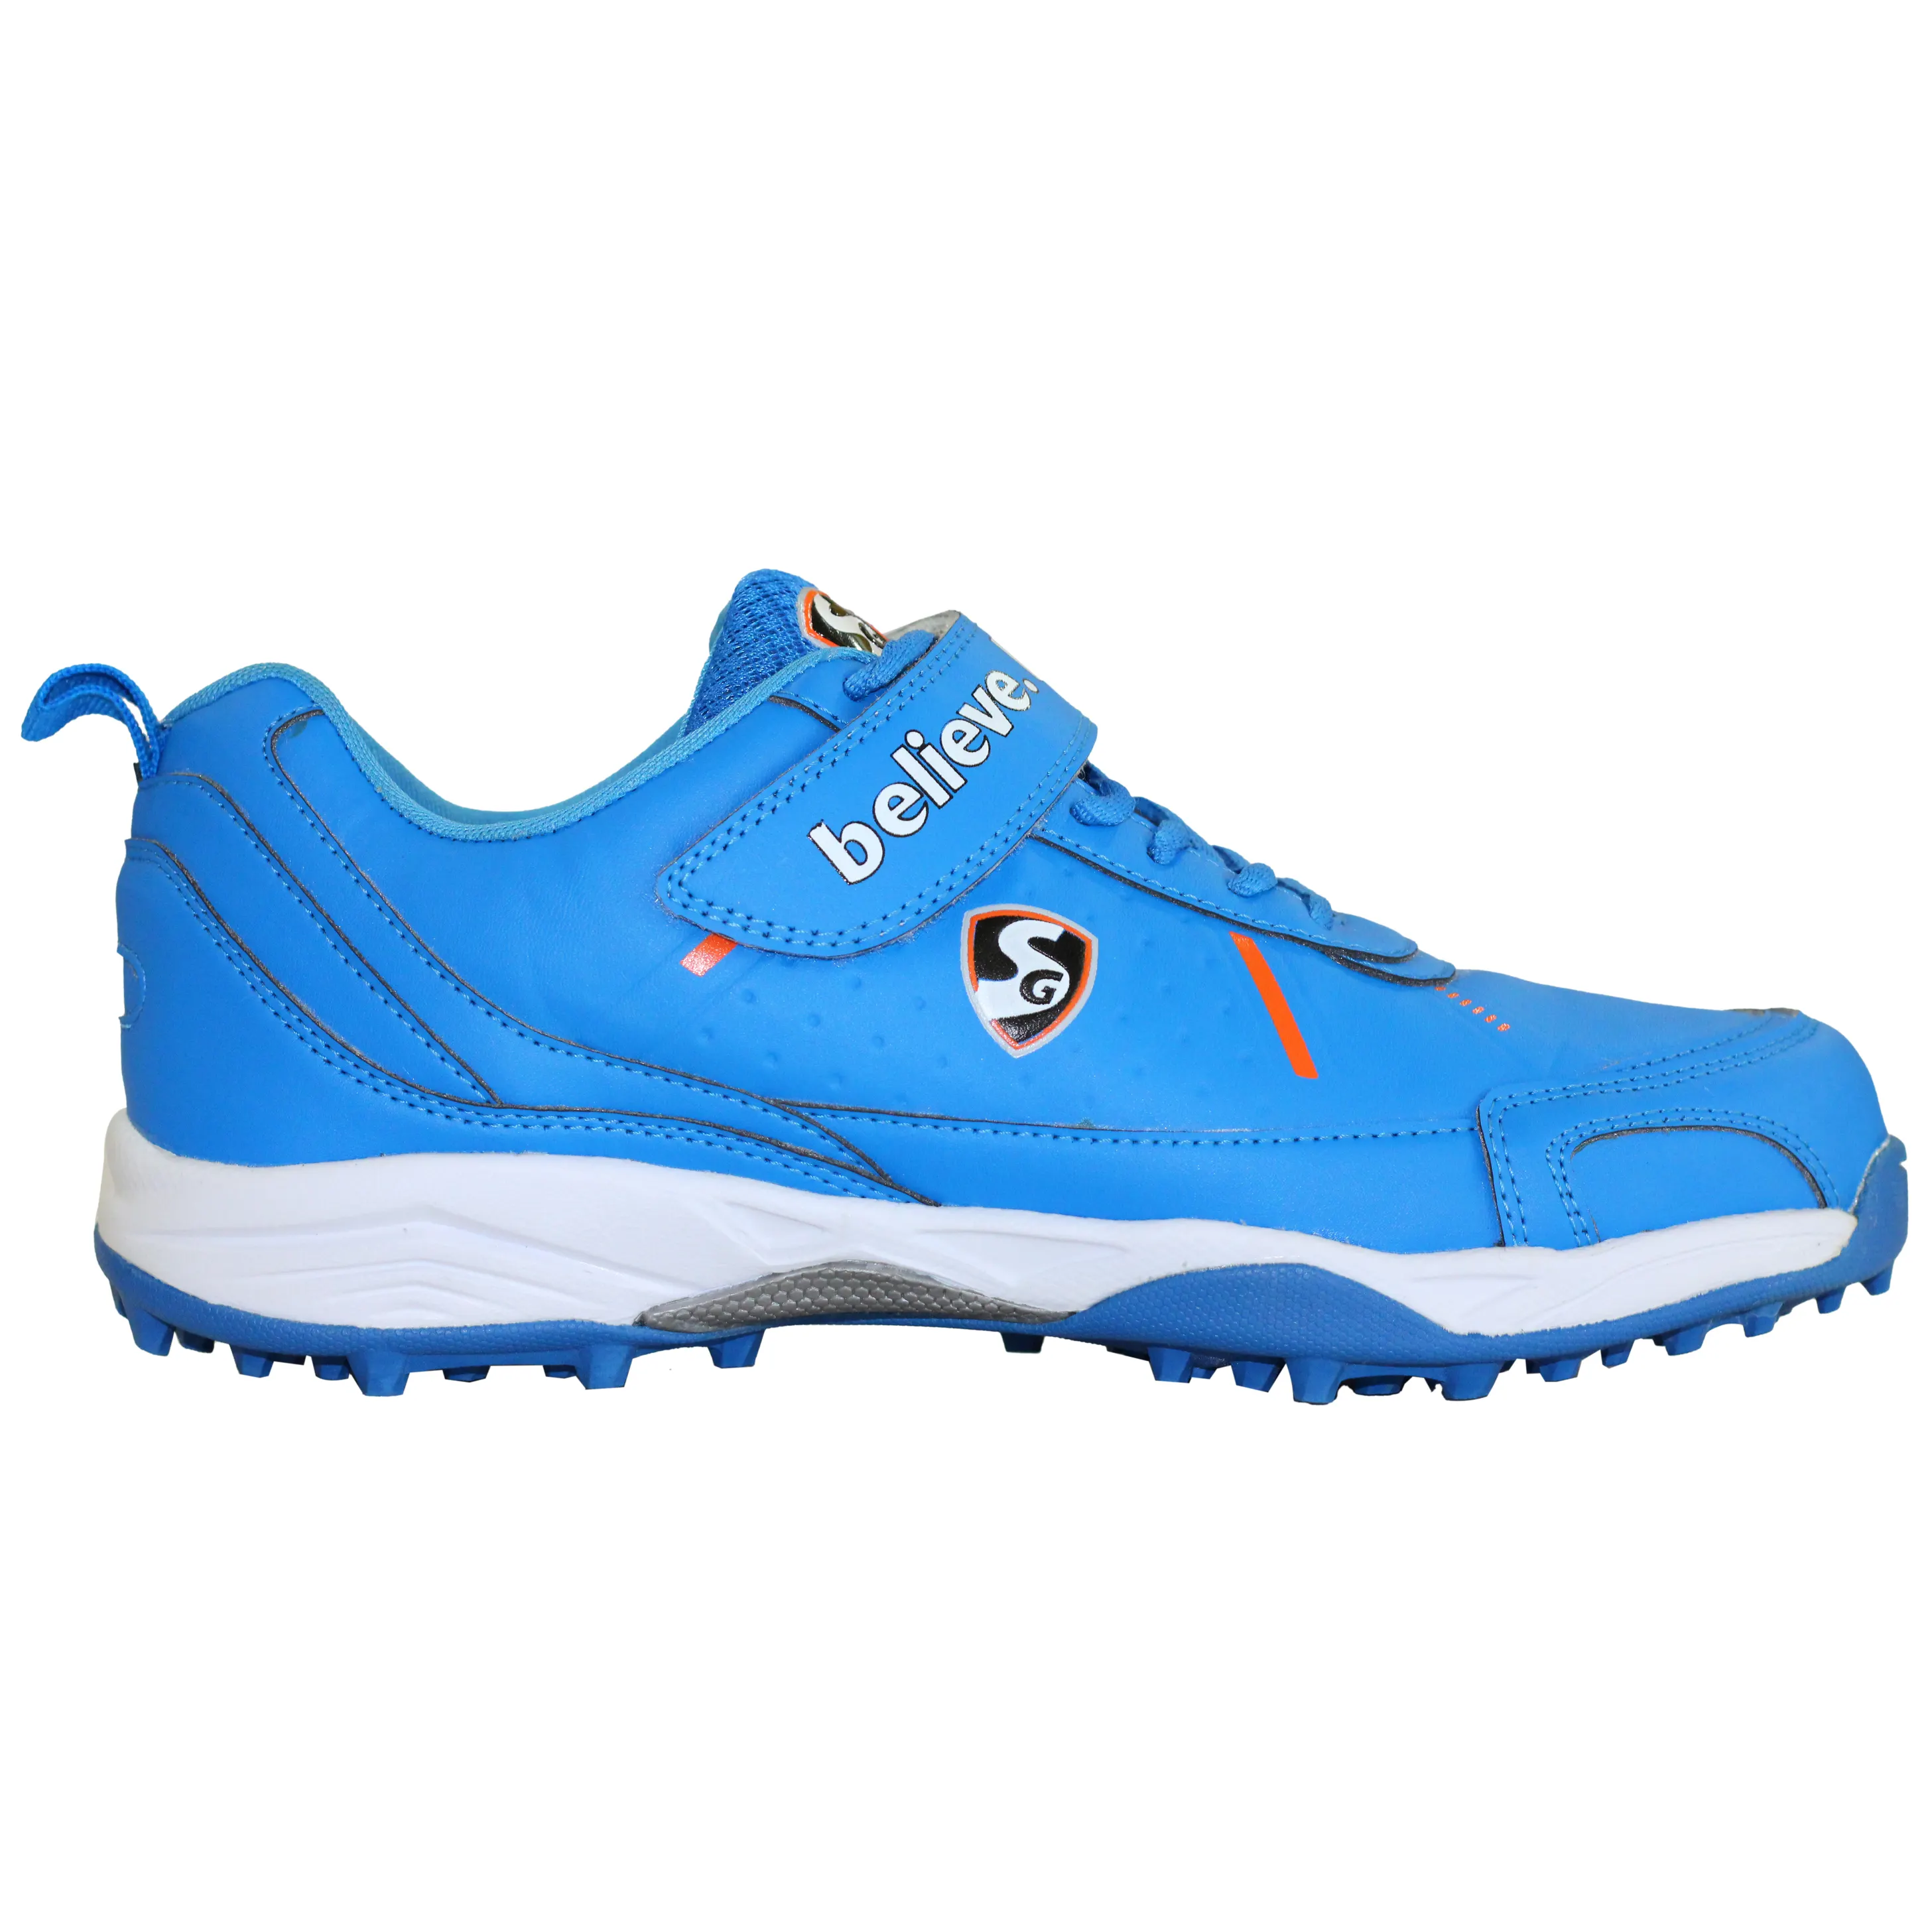 Nouvelle arrivée inde bleu couleur hommes Cricket formation Match chaussures frappeur pointes en caoutchouc OEM ODM chaussures de Cricket personnalisées SG marque